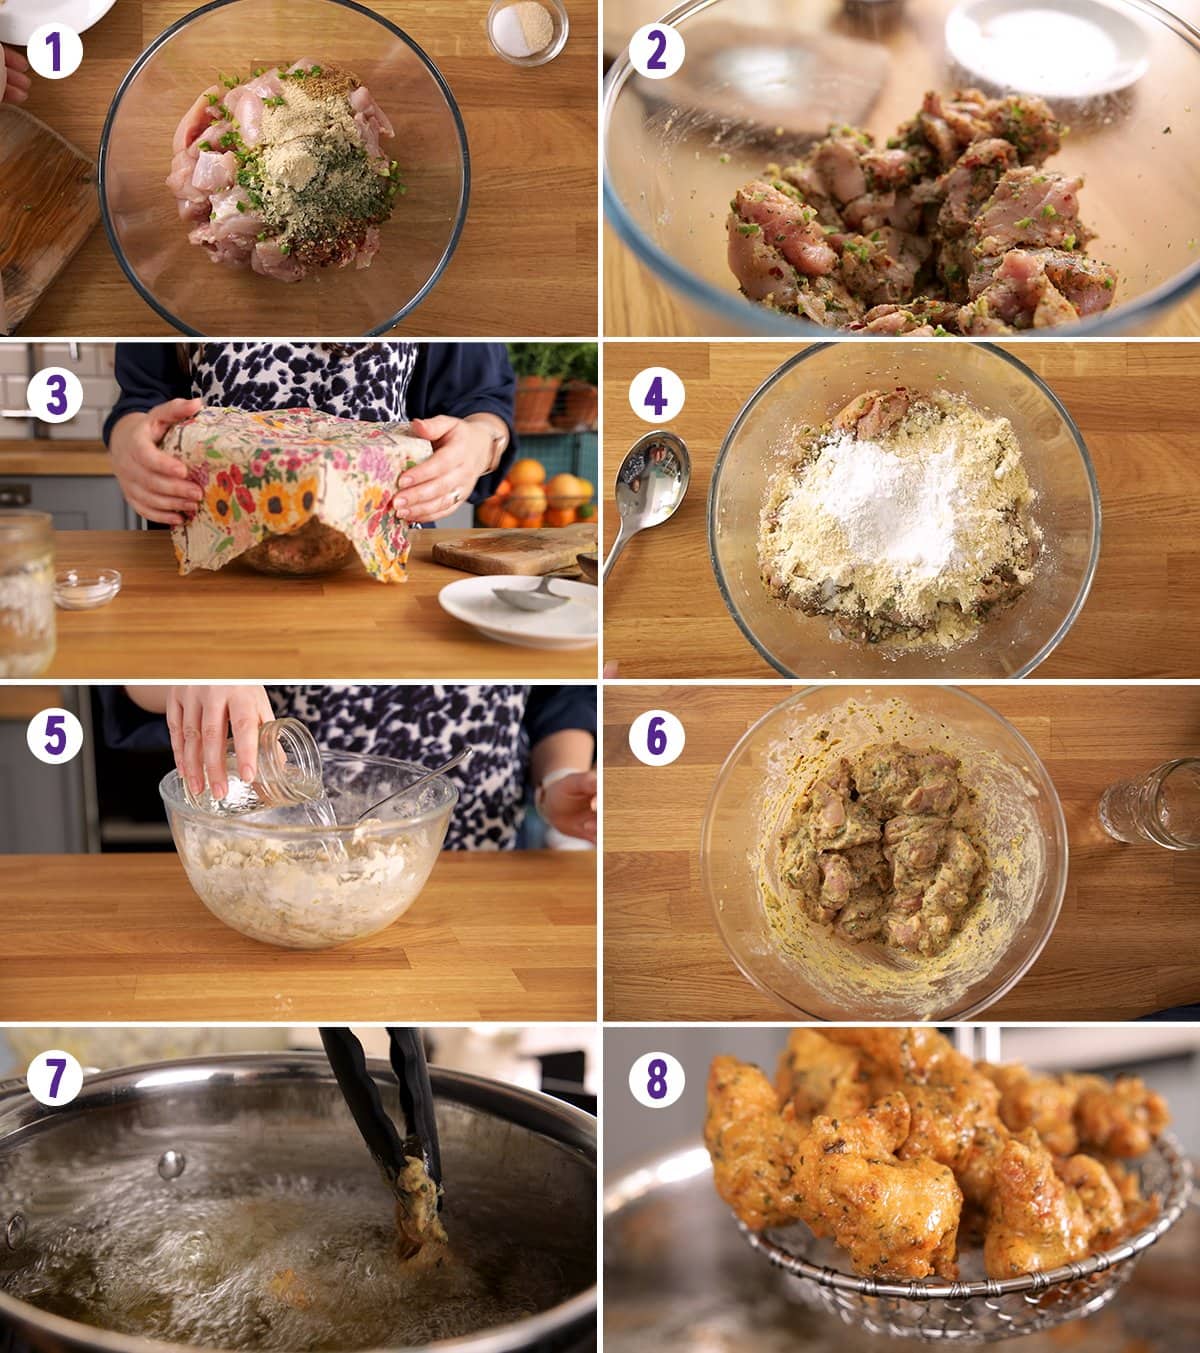 8 image collage showing how to make chicken pakora